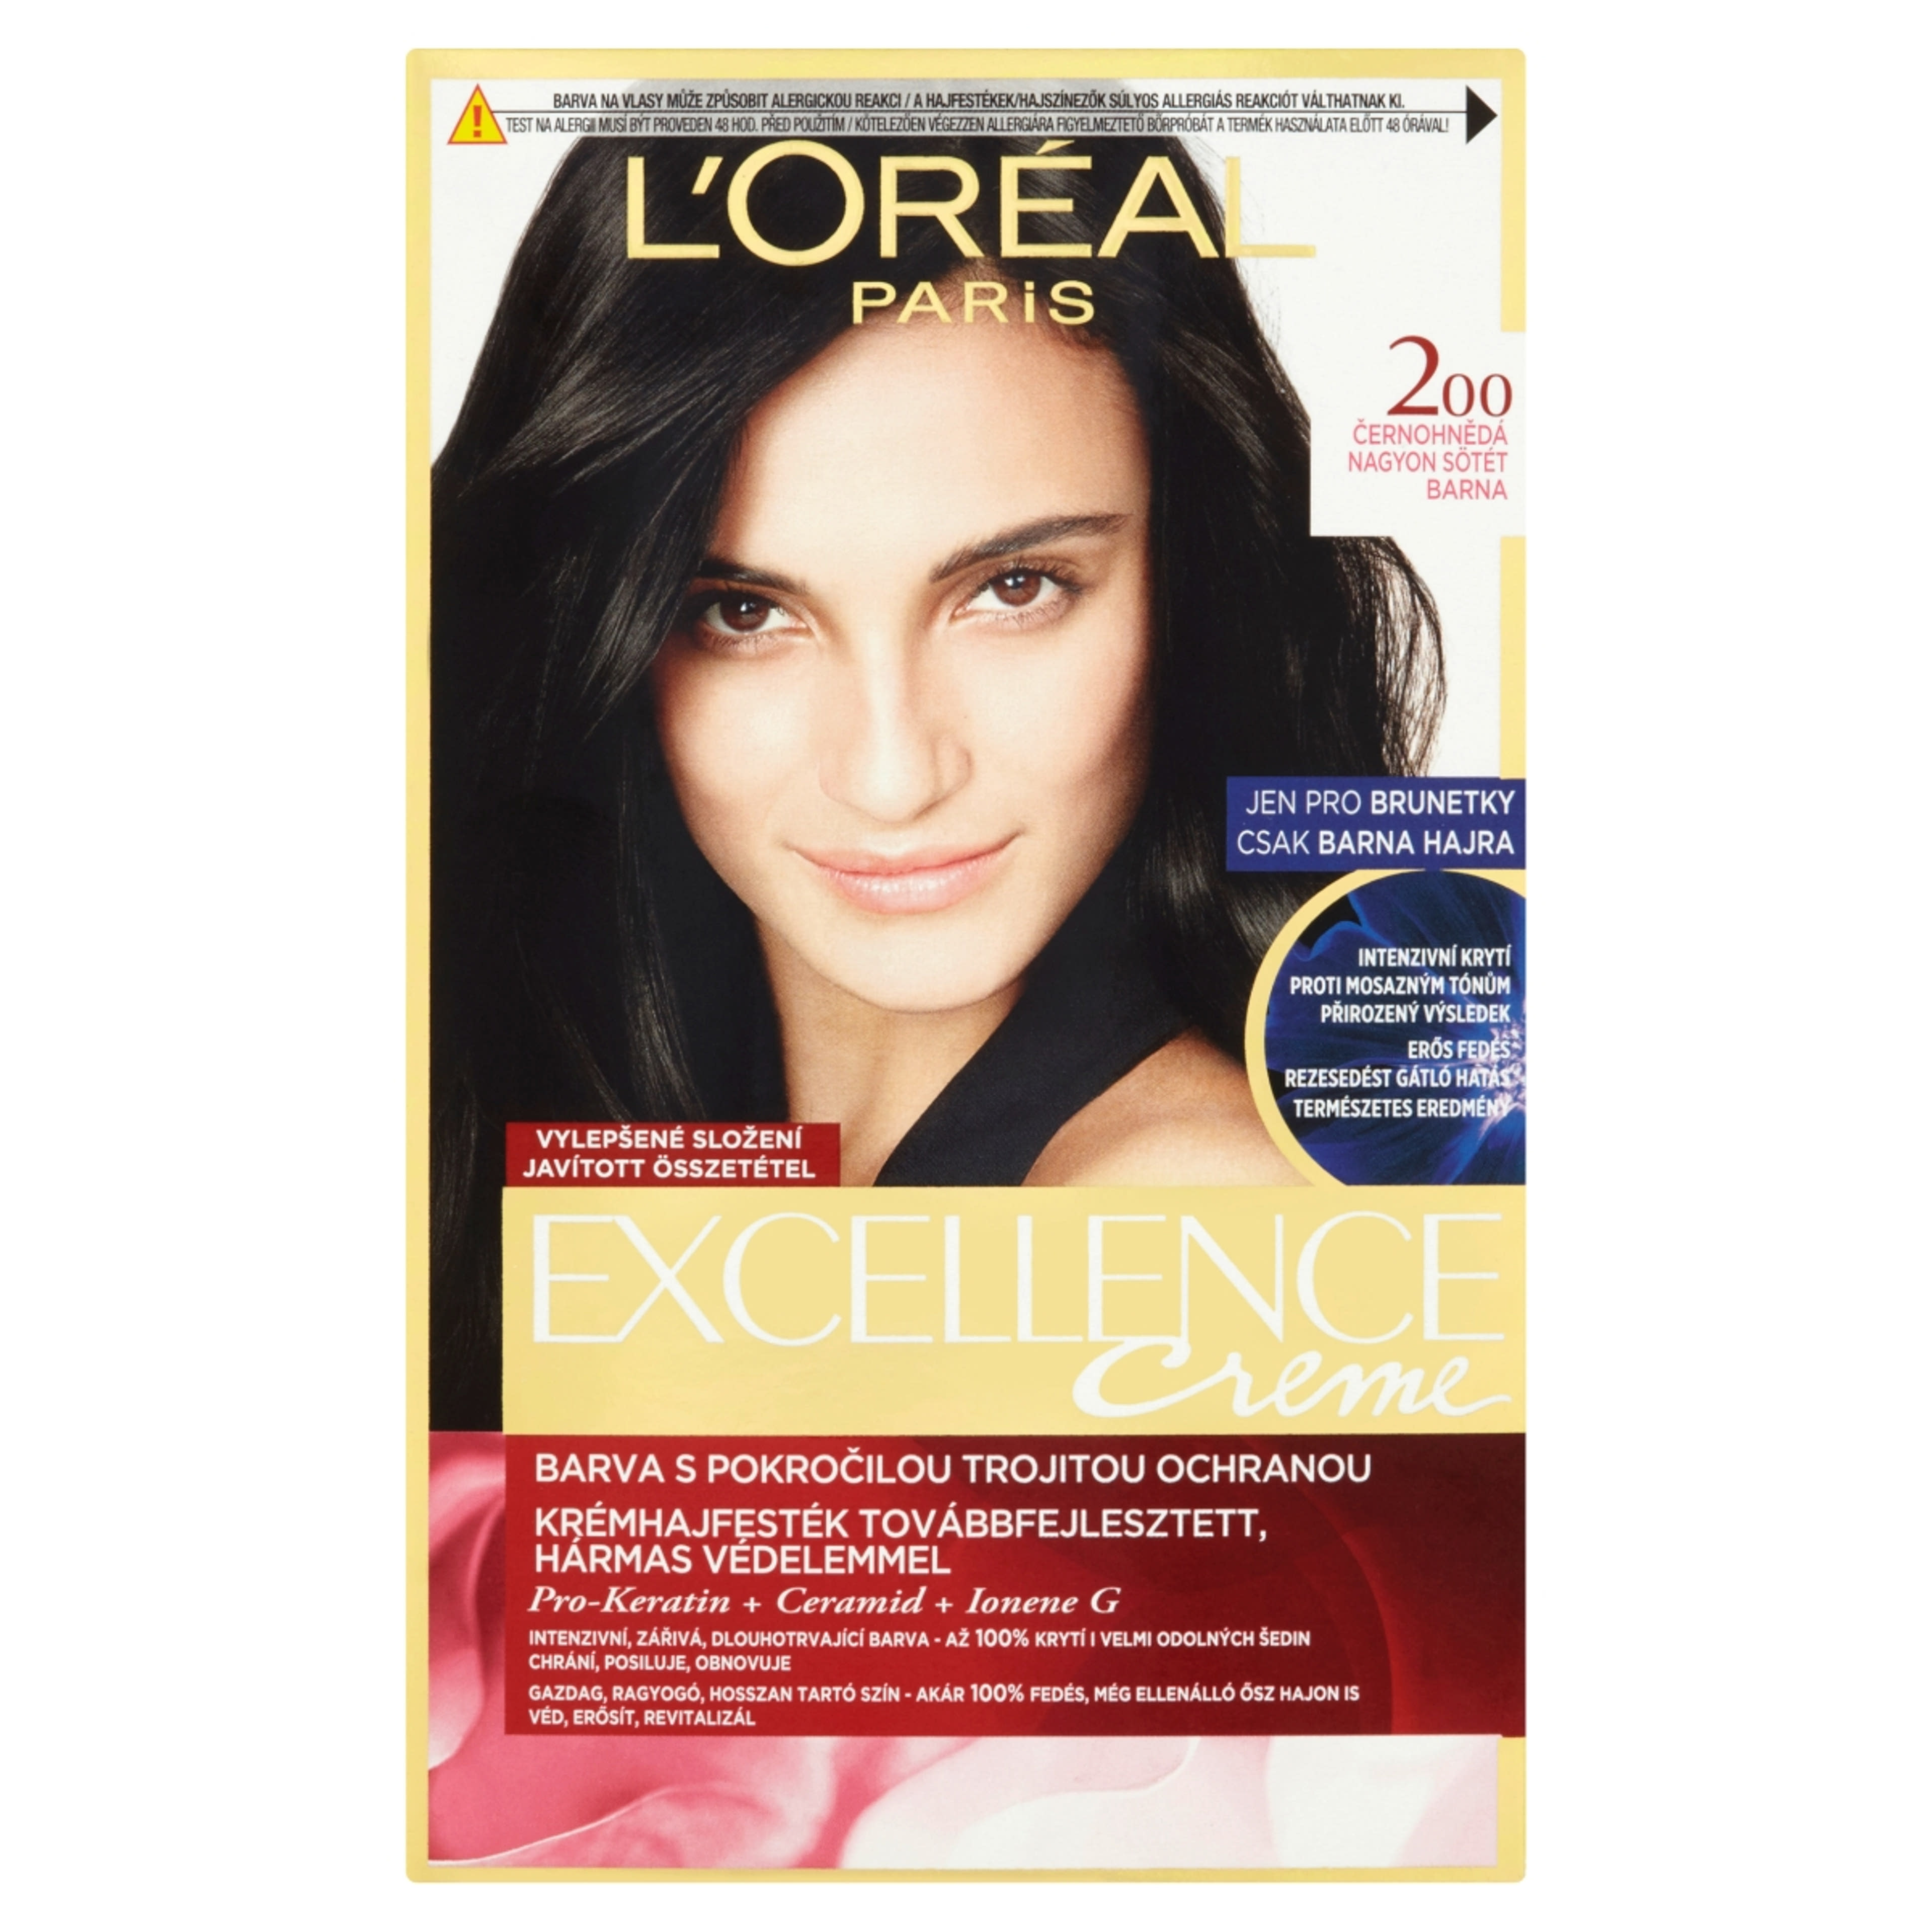 L'Oréal Paris Excellence krémes, tartós hajfesték 200 nagyon sötét barna - 1 db-1